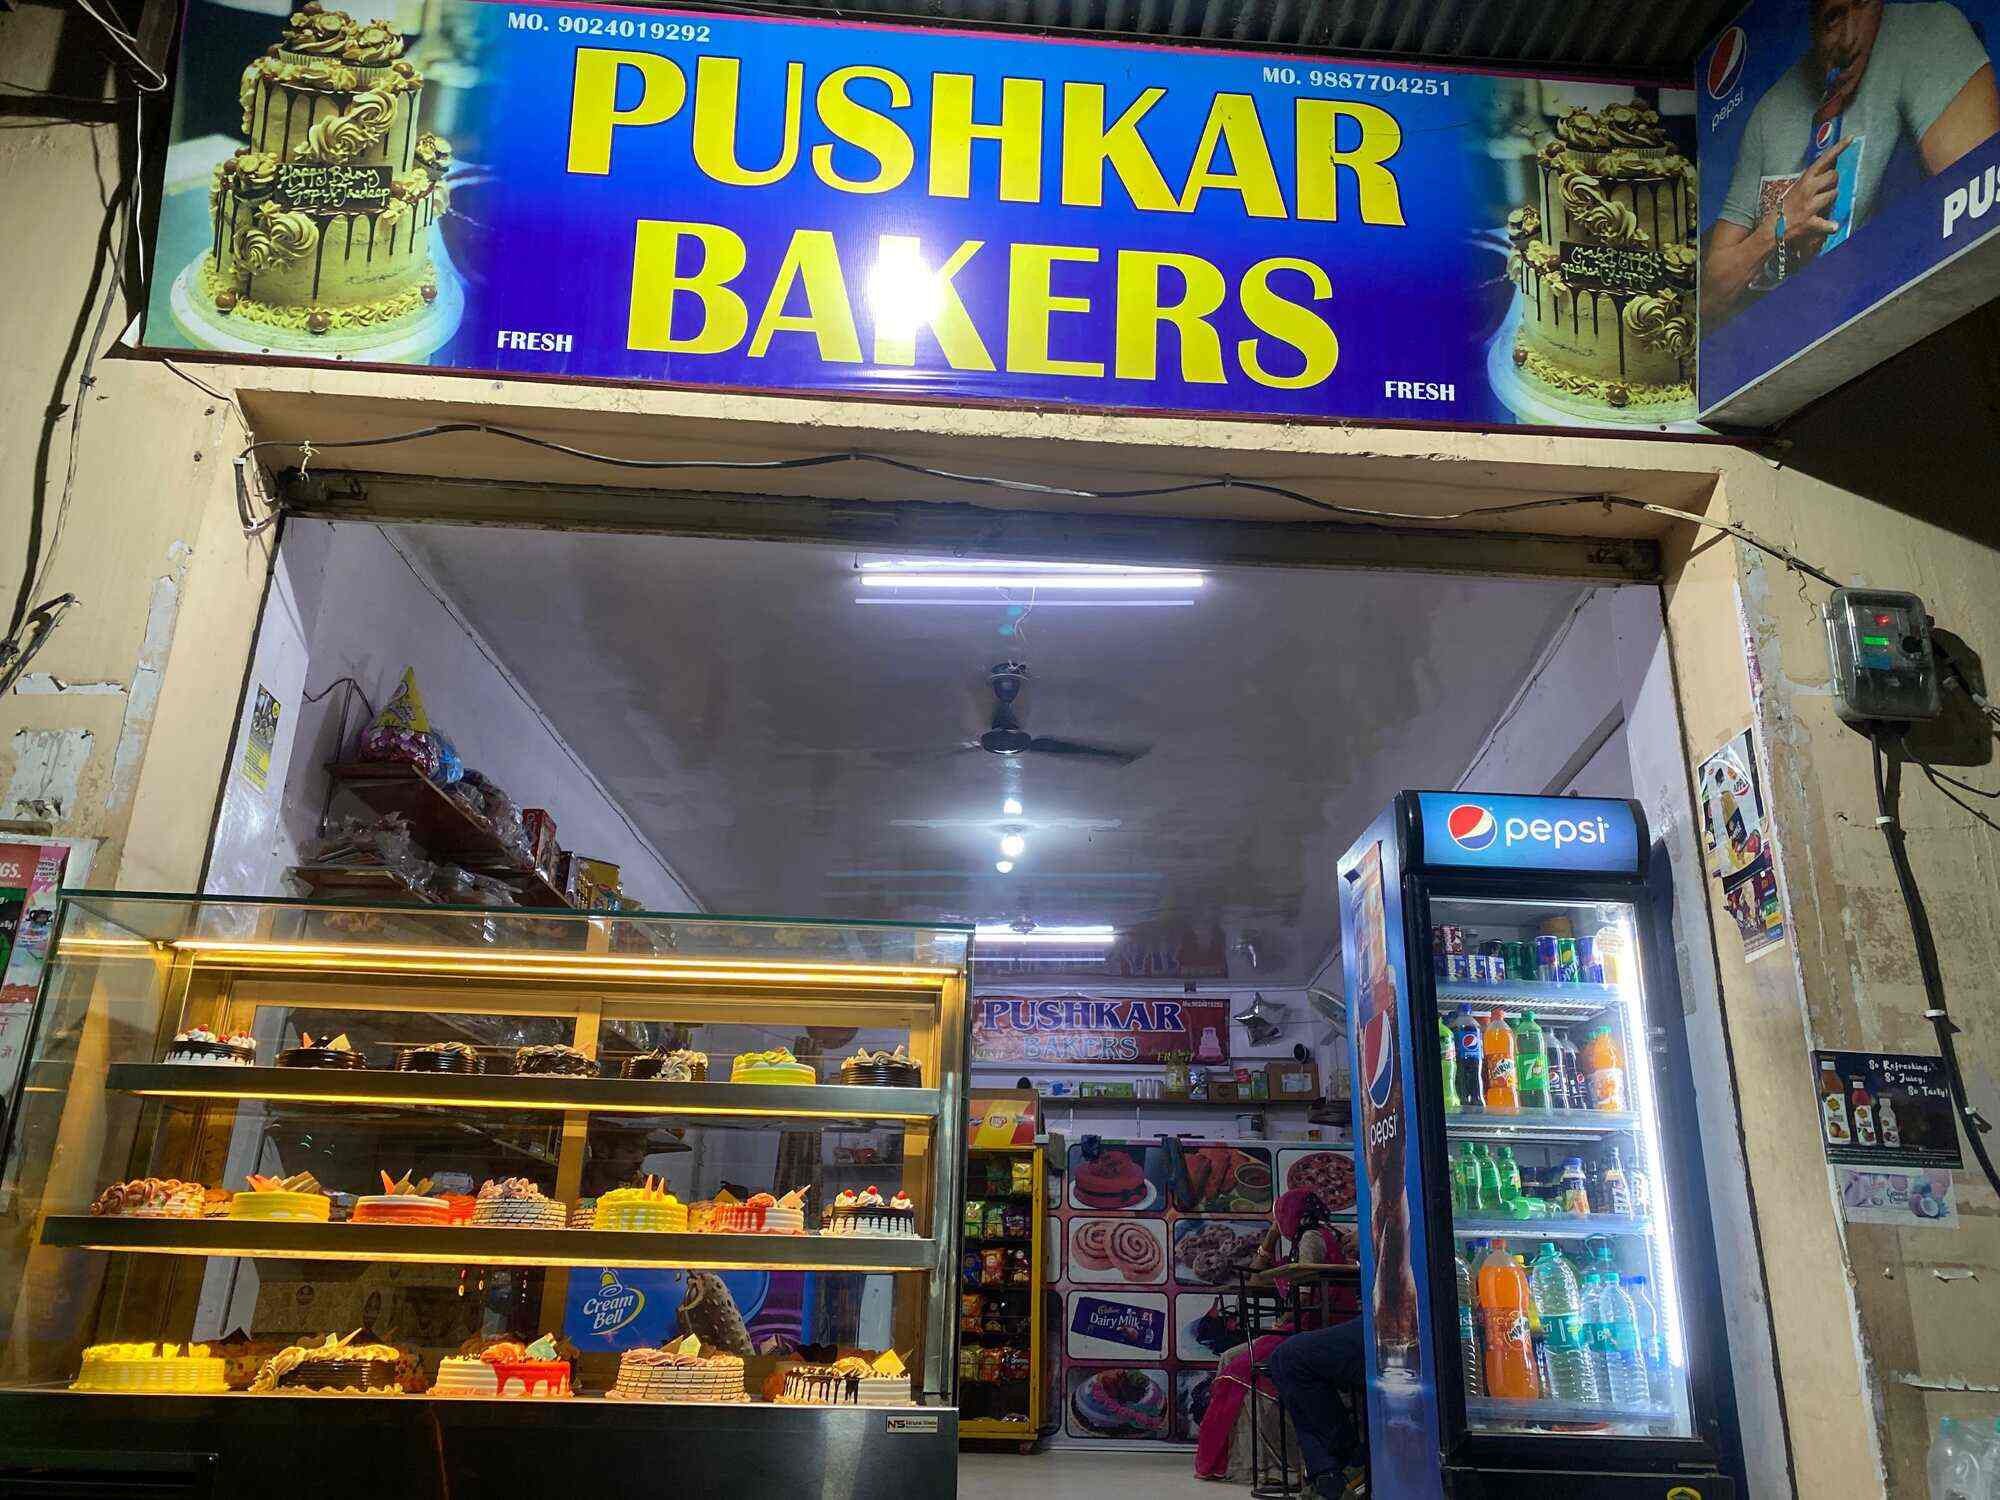 Pushkar Bakers